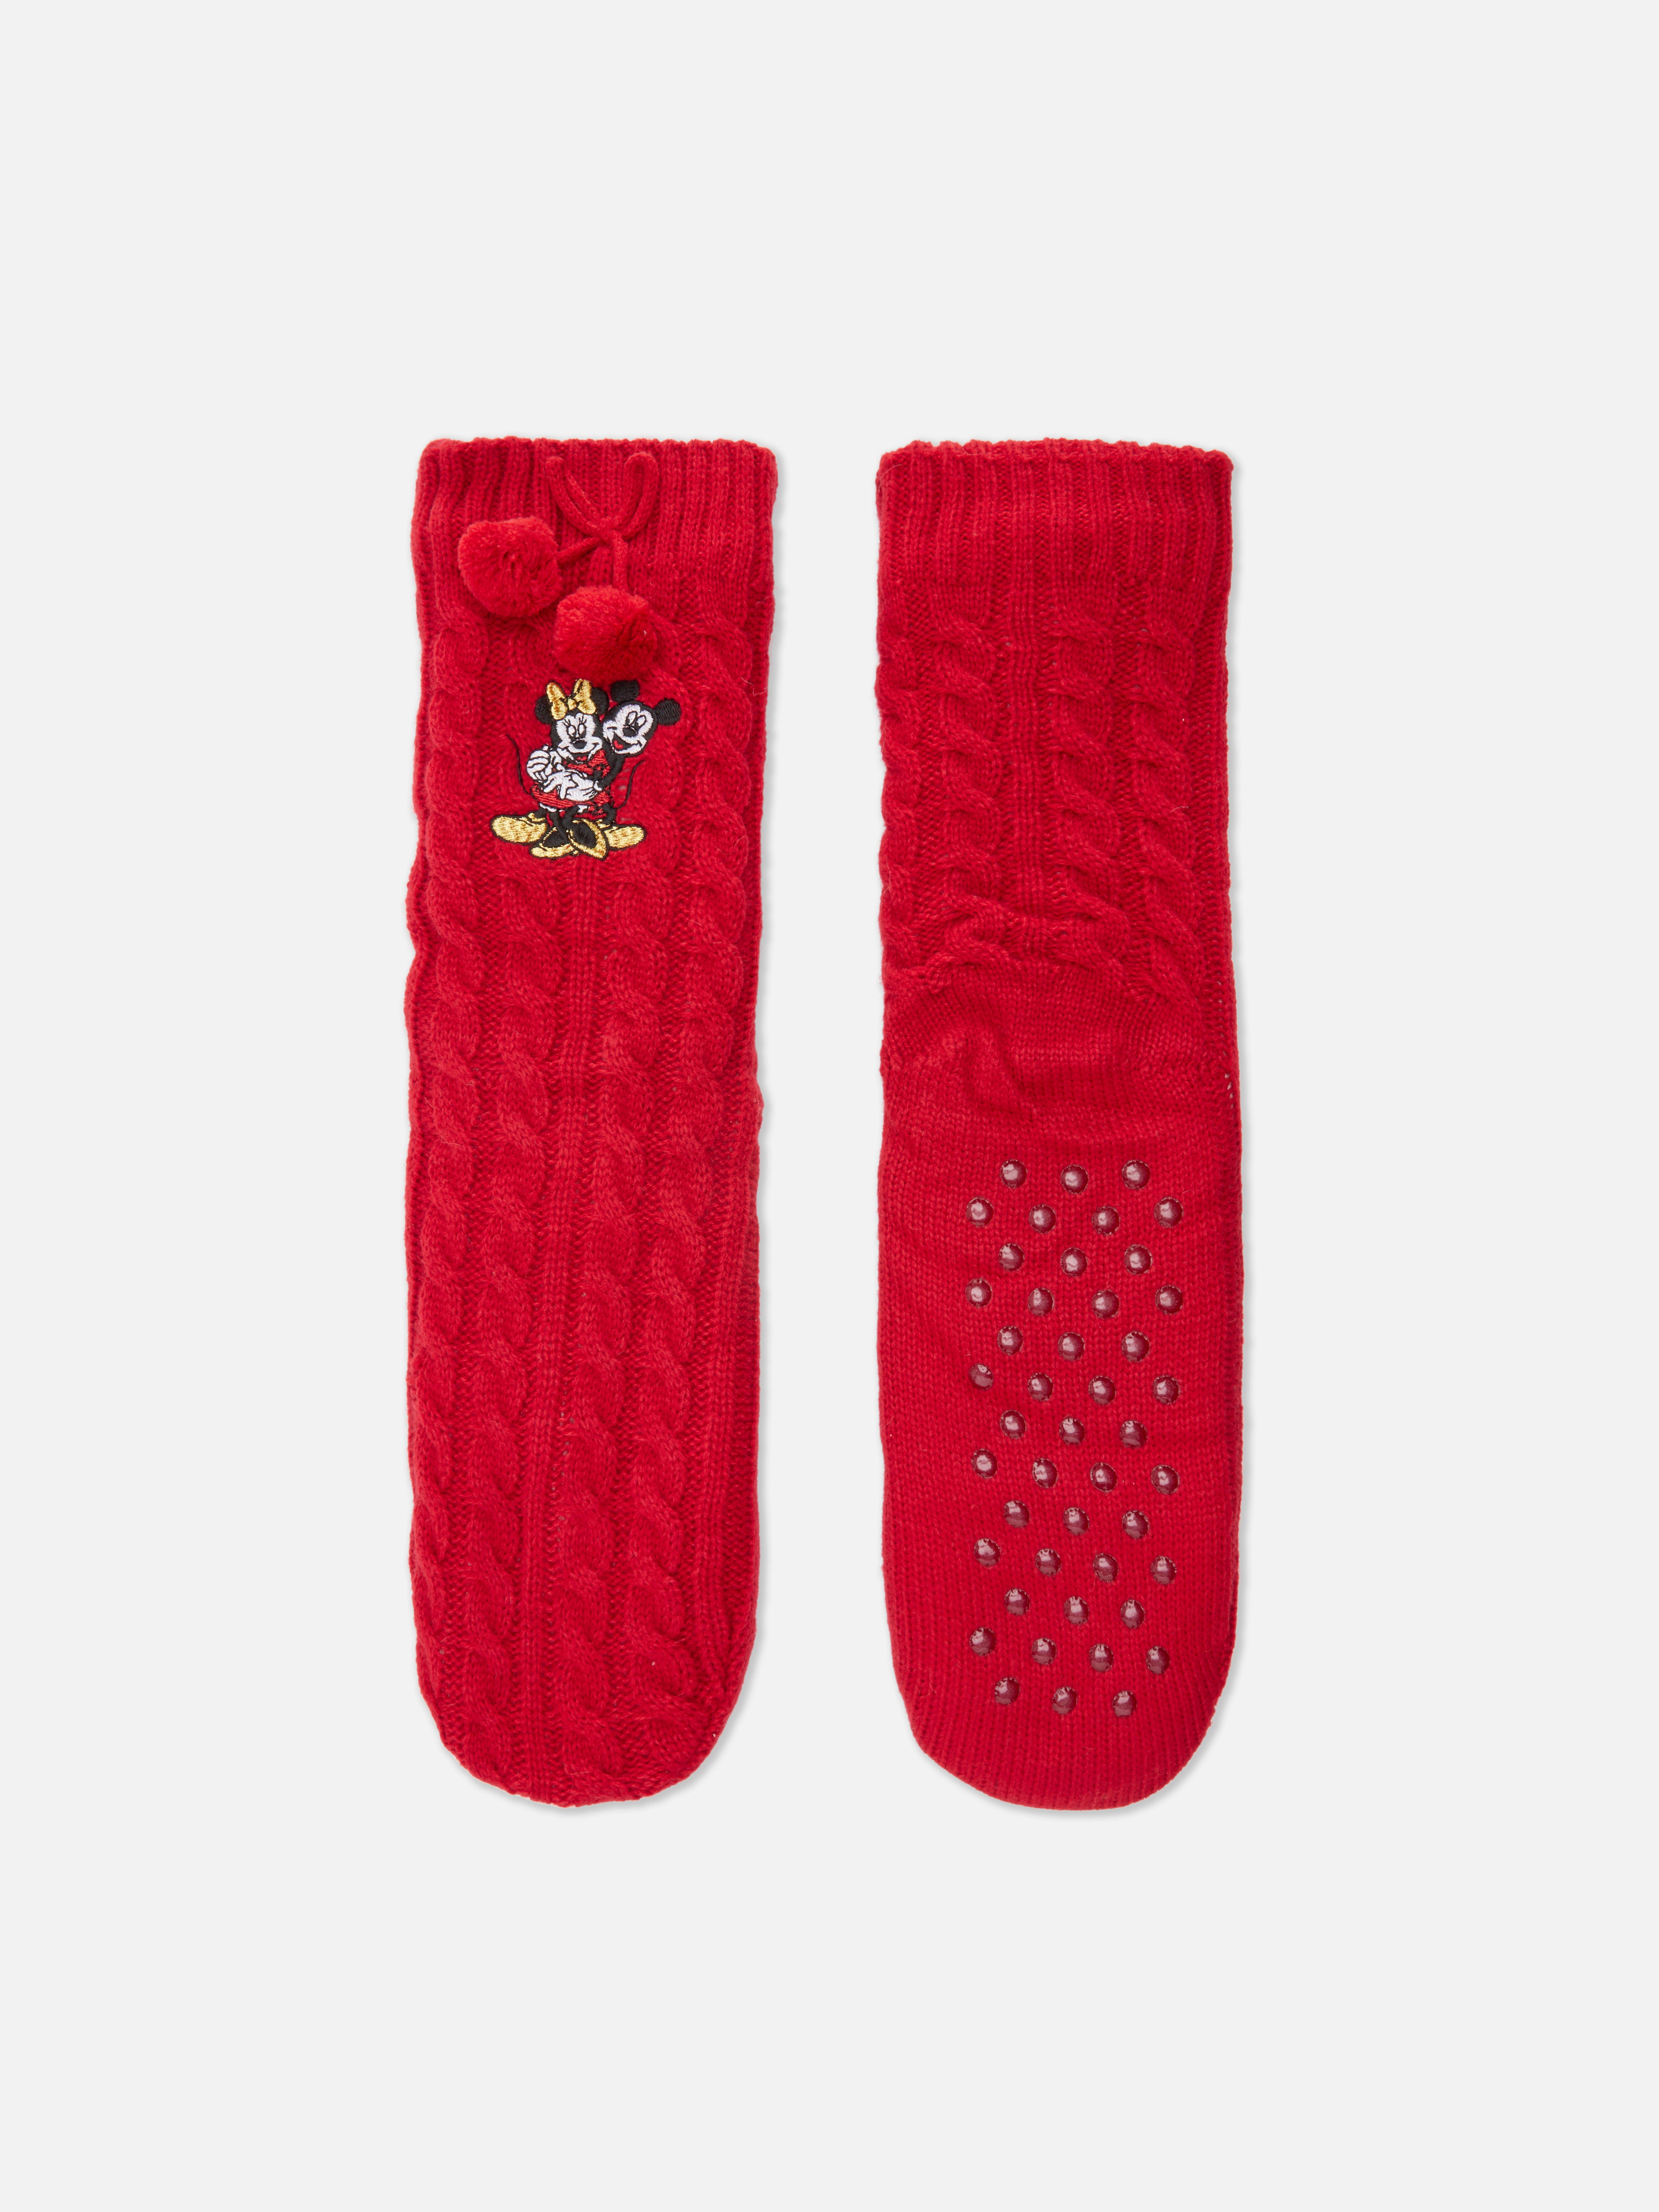 „Disney Micky Maus und Minnie Maus“ Socken mit Zopfmuster